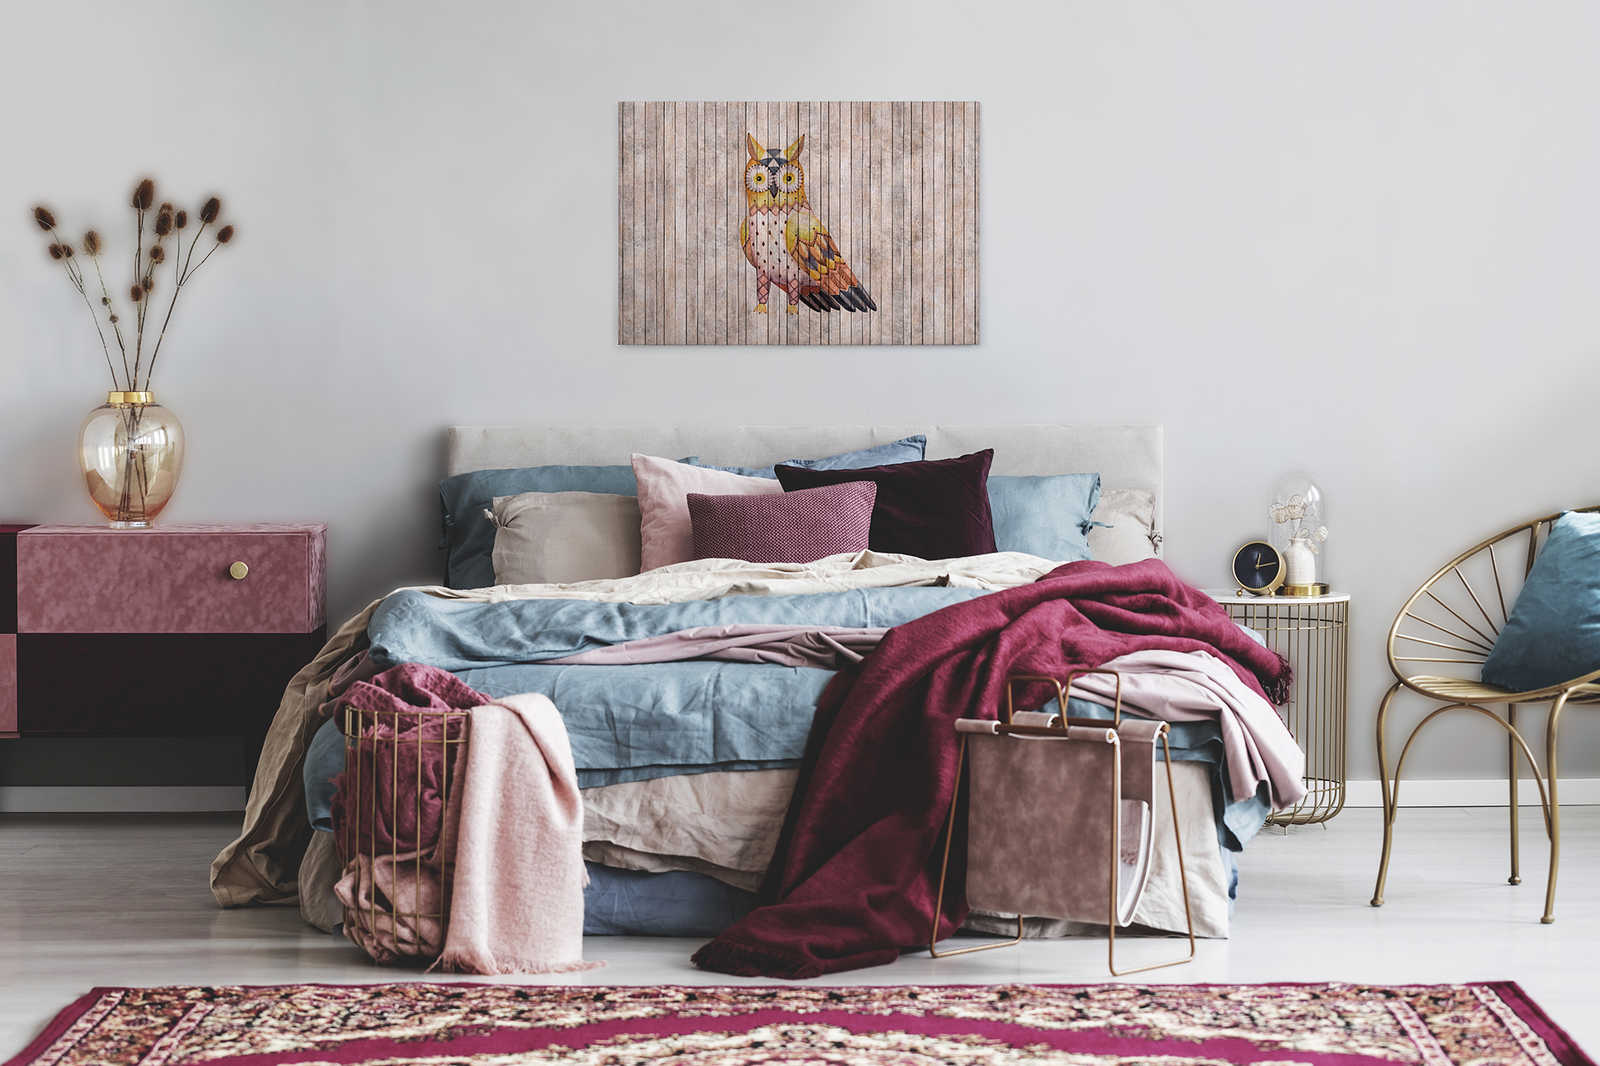             Fairy tale 1 - Mur de planches en bois avec hibou Tableau sur toile - 0,90 m x 0,60 m
        